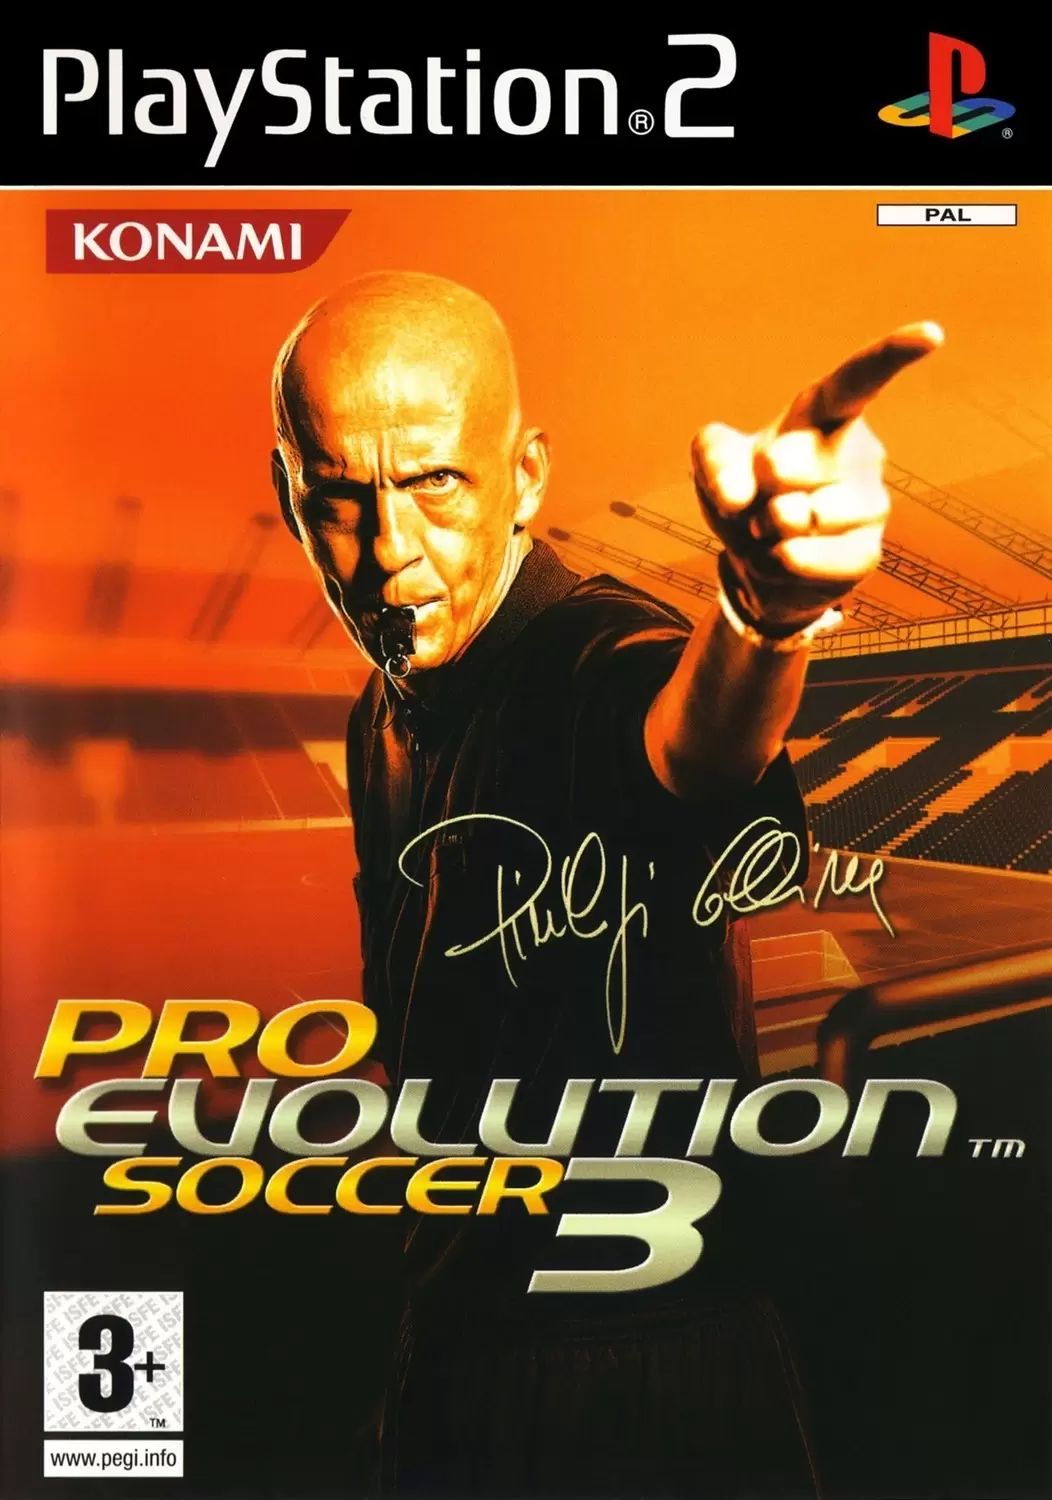 PS2 Games - Pro Evolution Soccer 3